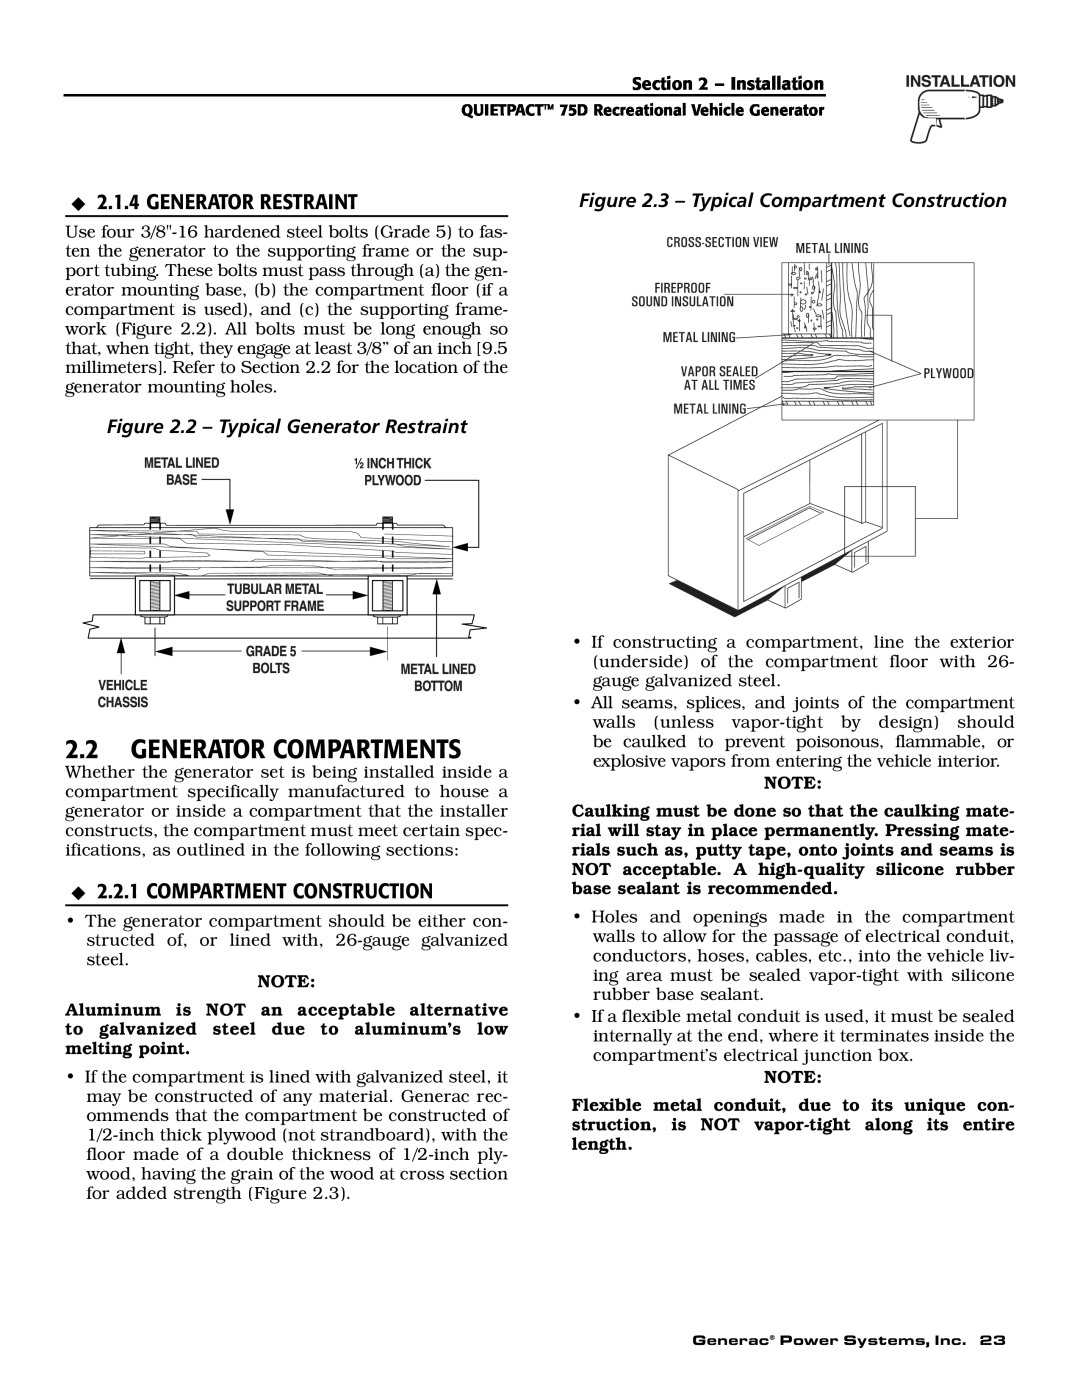 Guardian Technologies 004270-2 owner manual Generator Compartments, Generator Restraint, Compartment Construction 